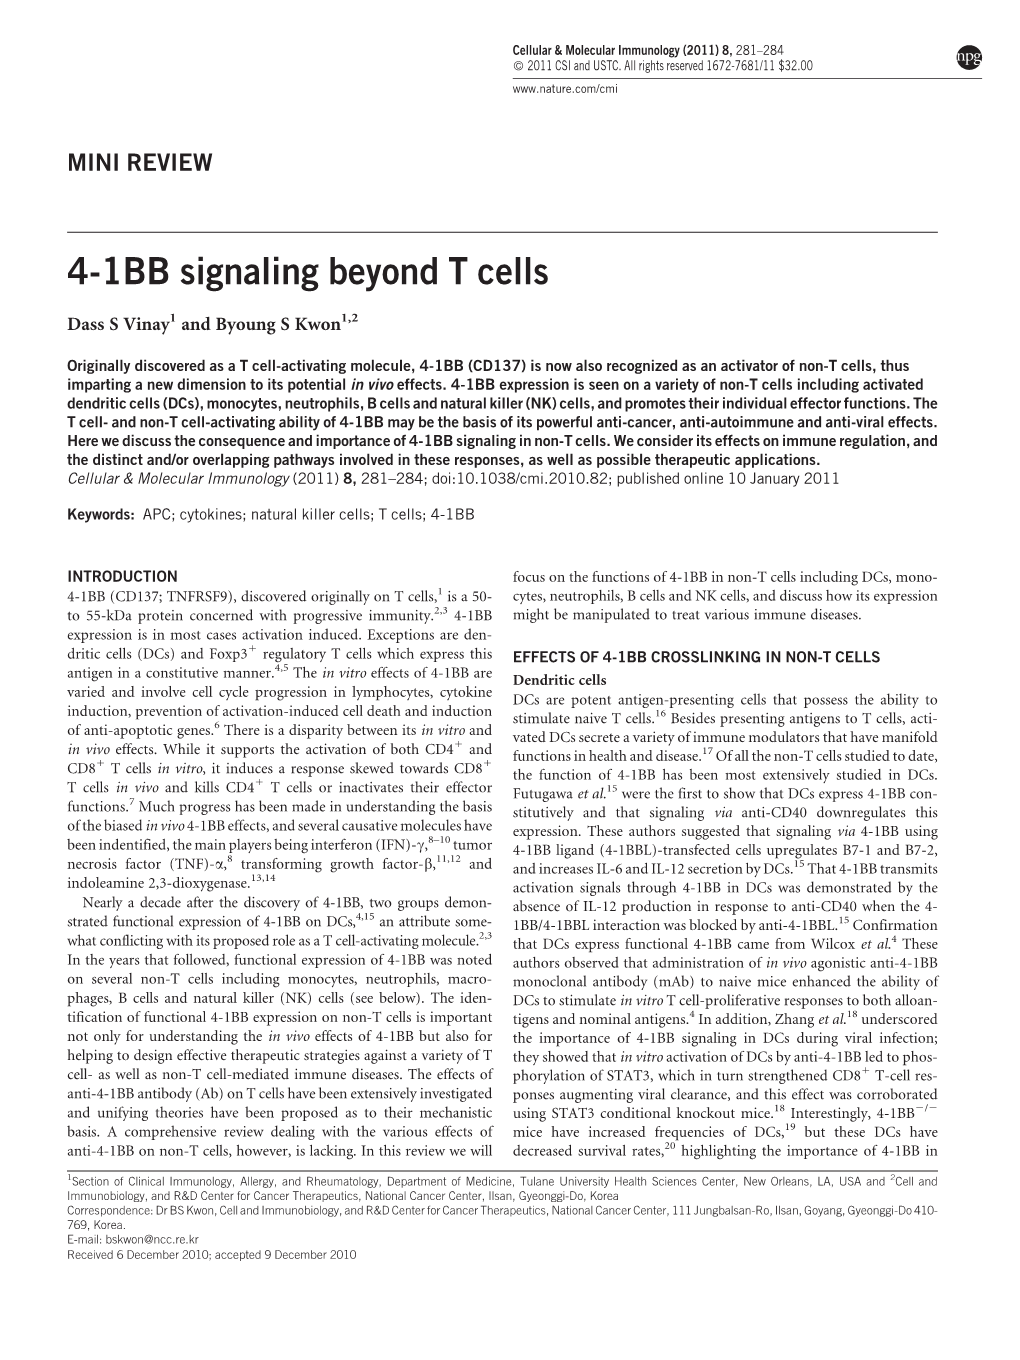 4-1BB Signaling Beyond T Cells